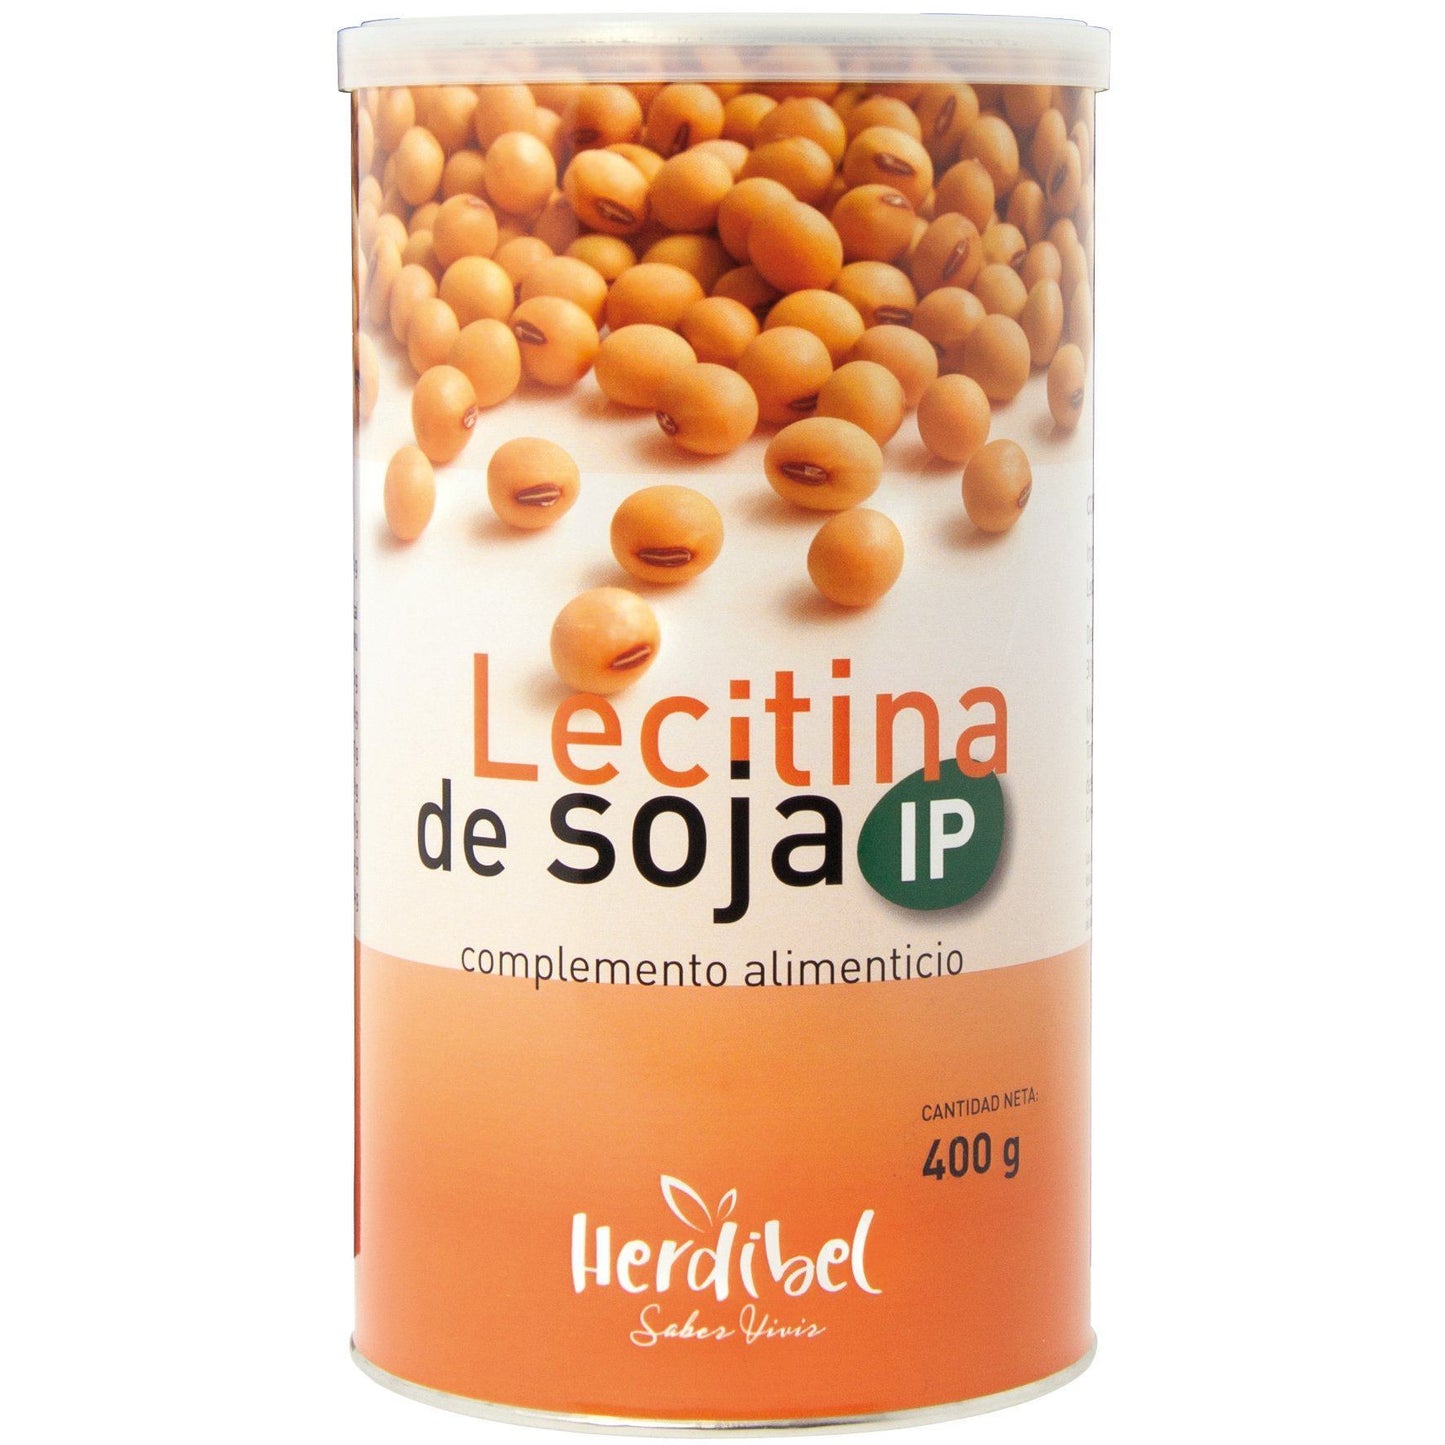 Lecitina de Soja Ip 400 gr | Herdibel - Dietetica Ferrer